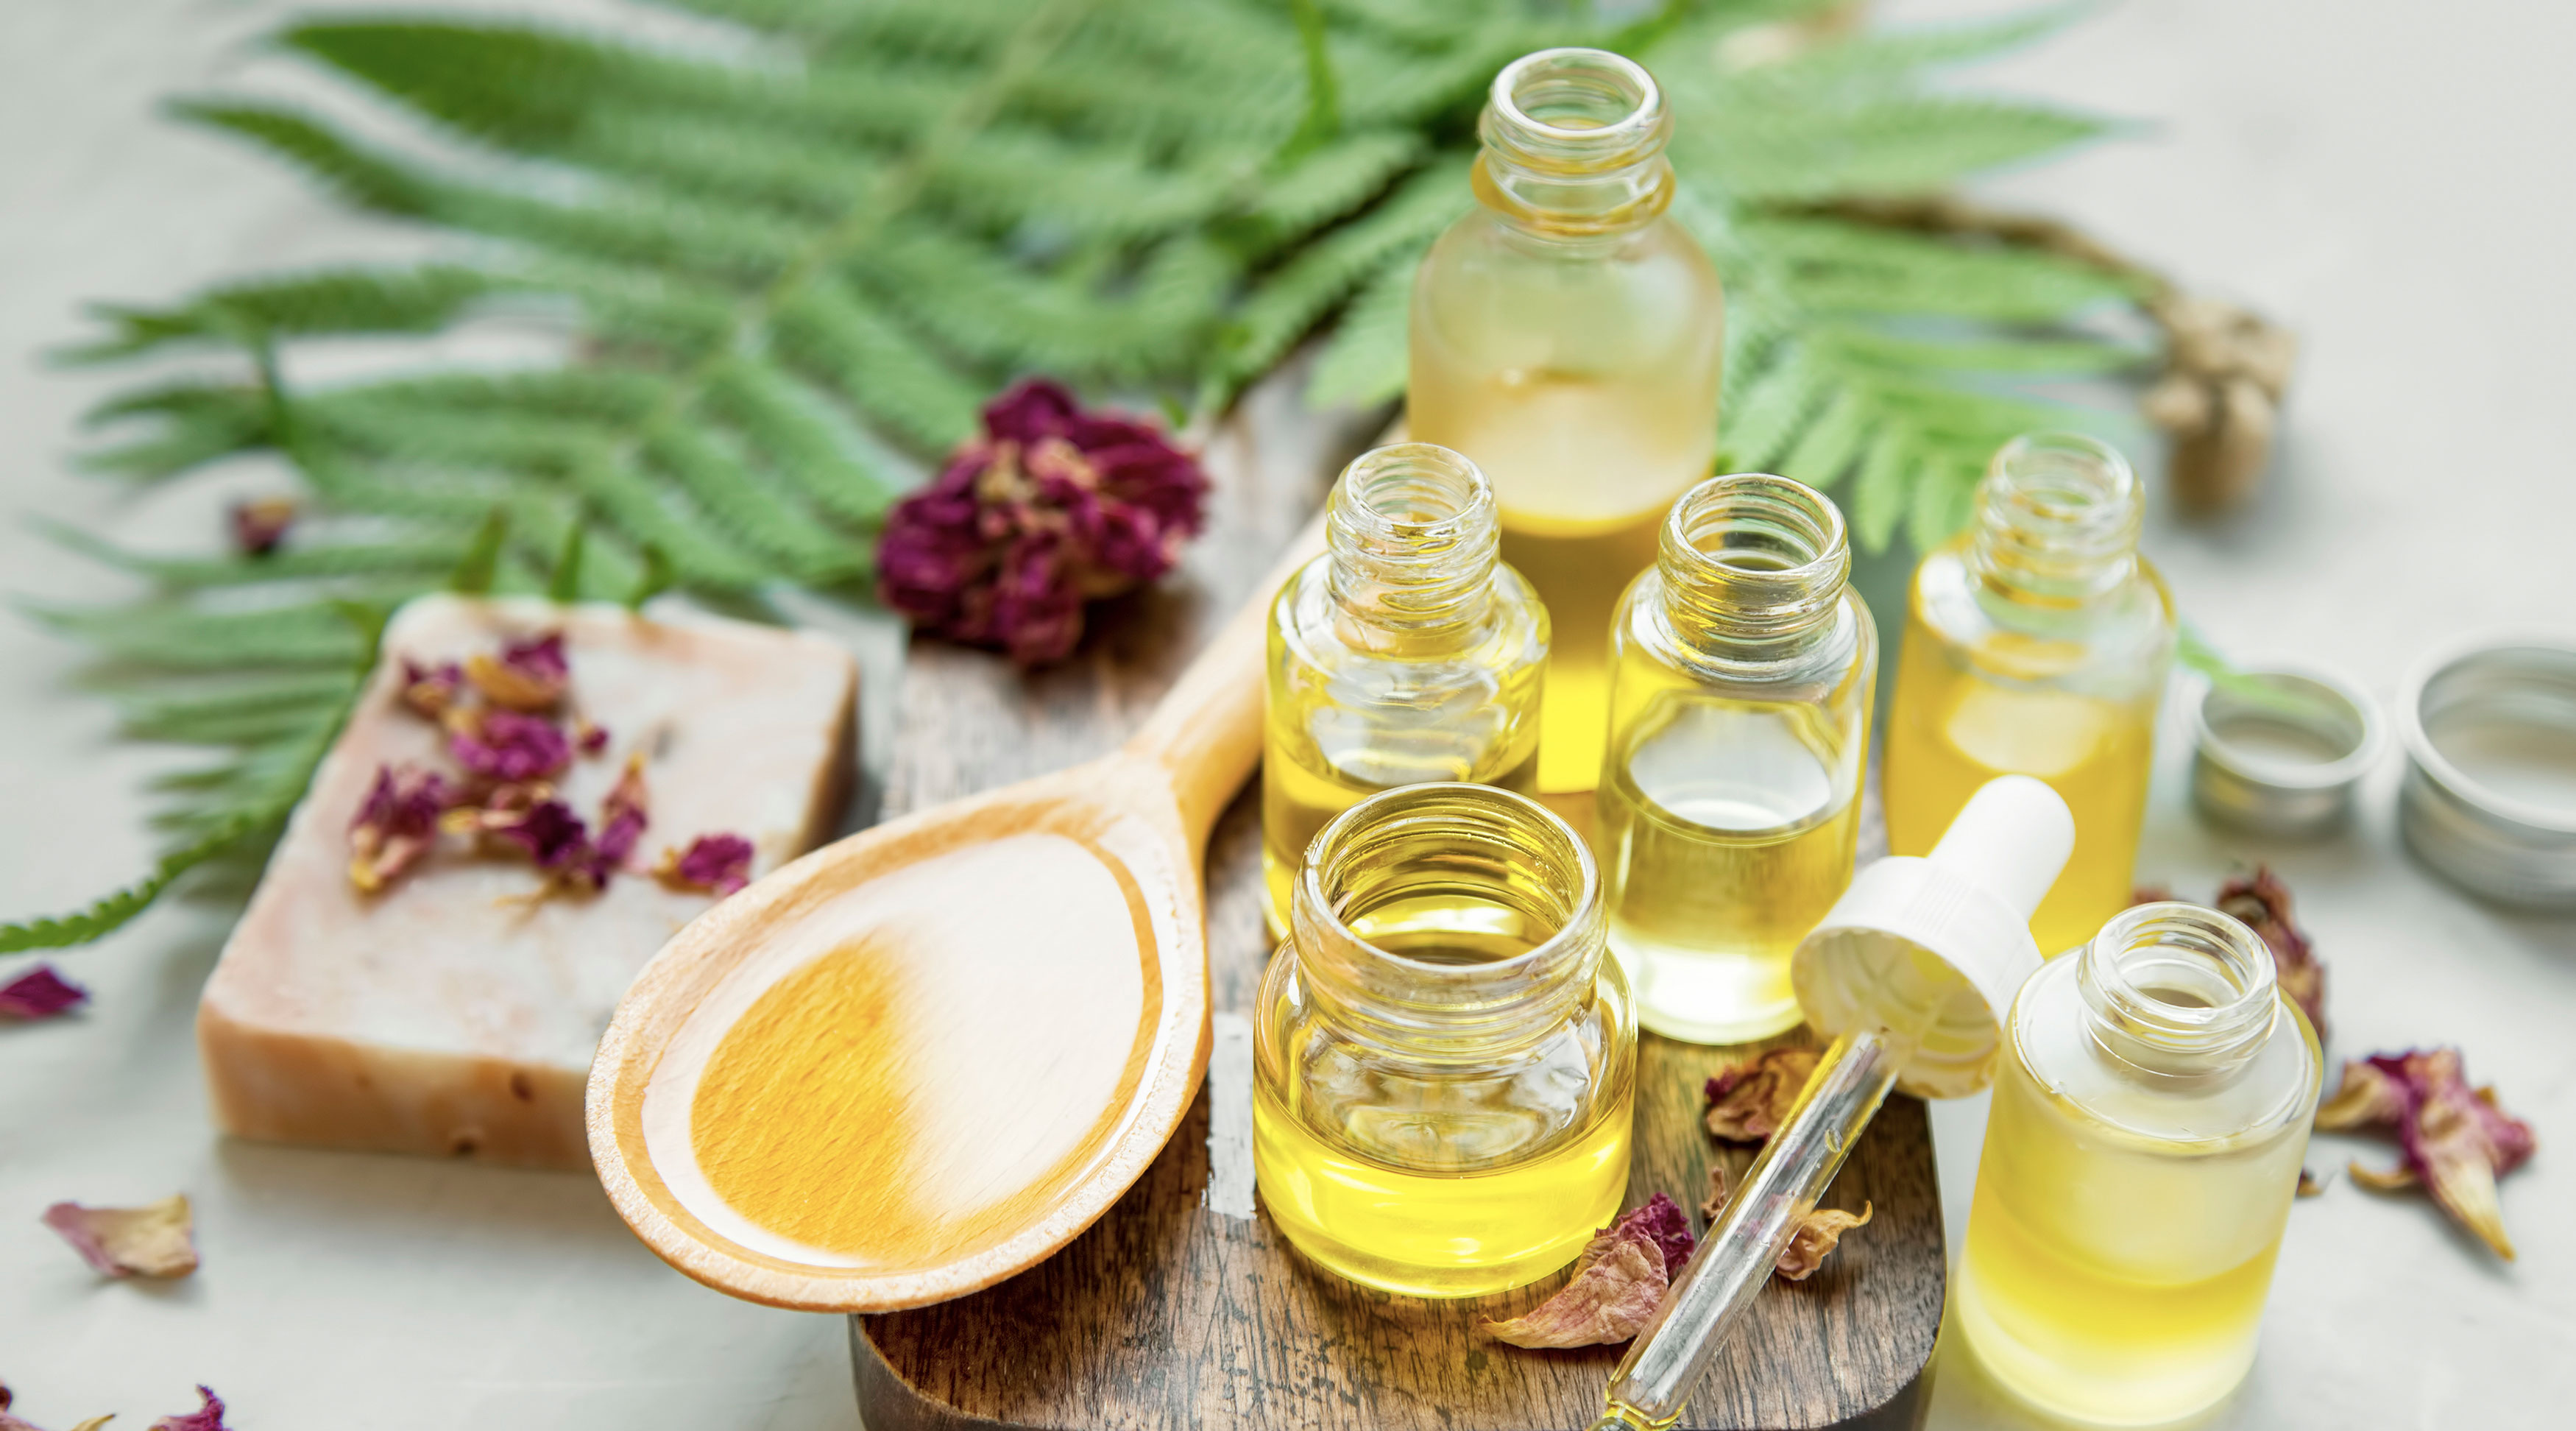 Le Guide des huiles végétales en aromathérapie, cosmétique